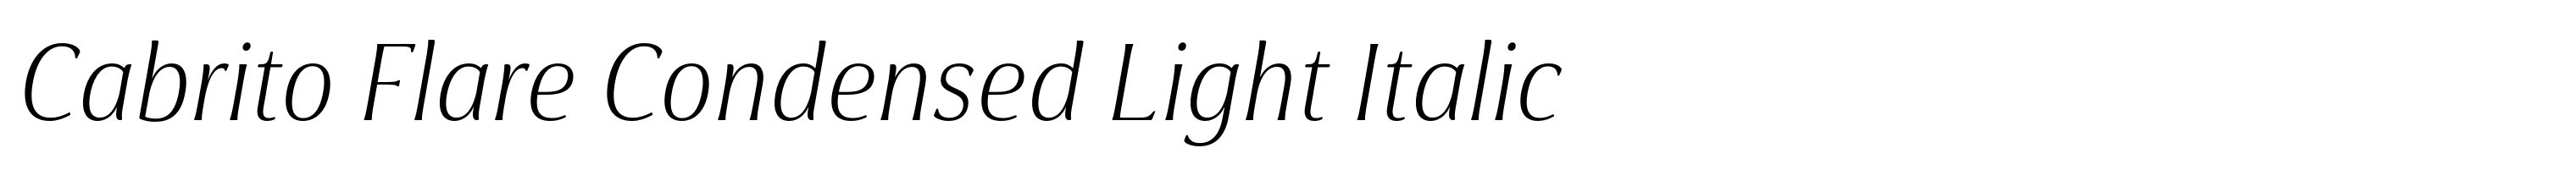 Cabrito Flare Condensed Light Italic